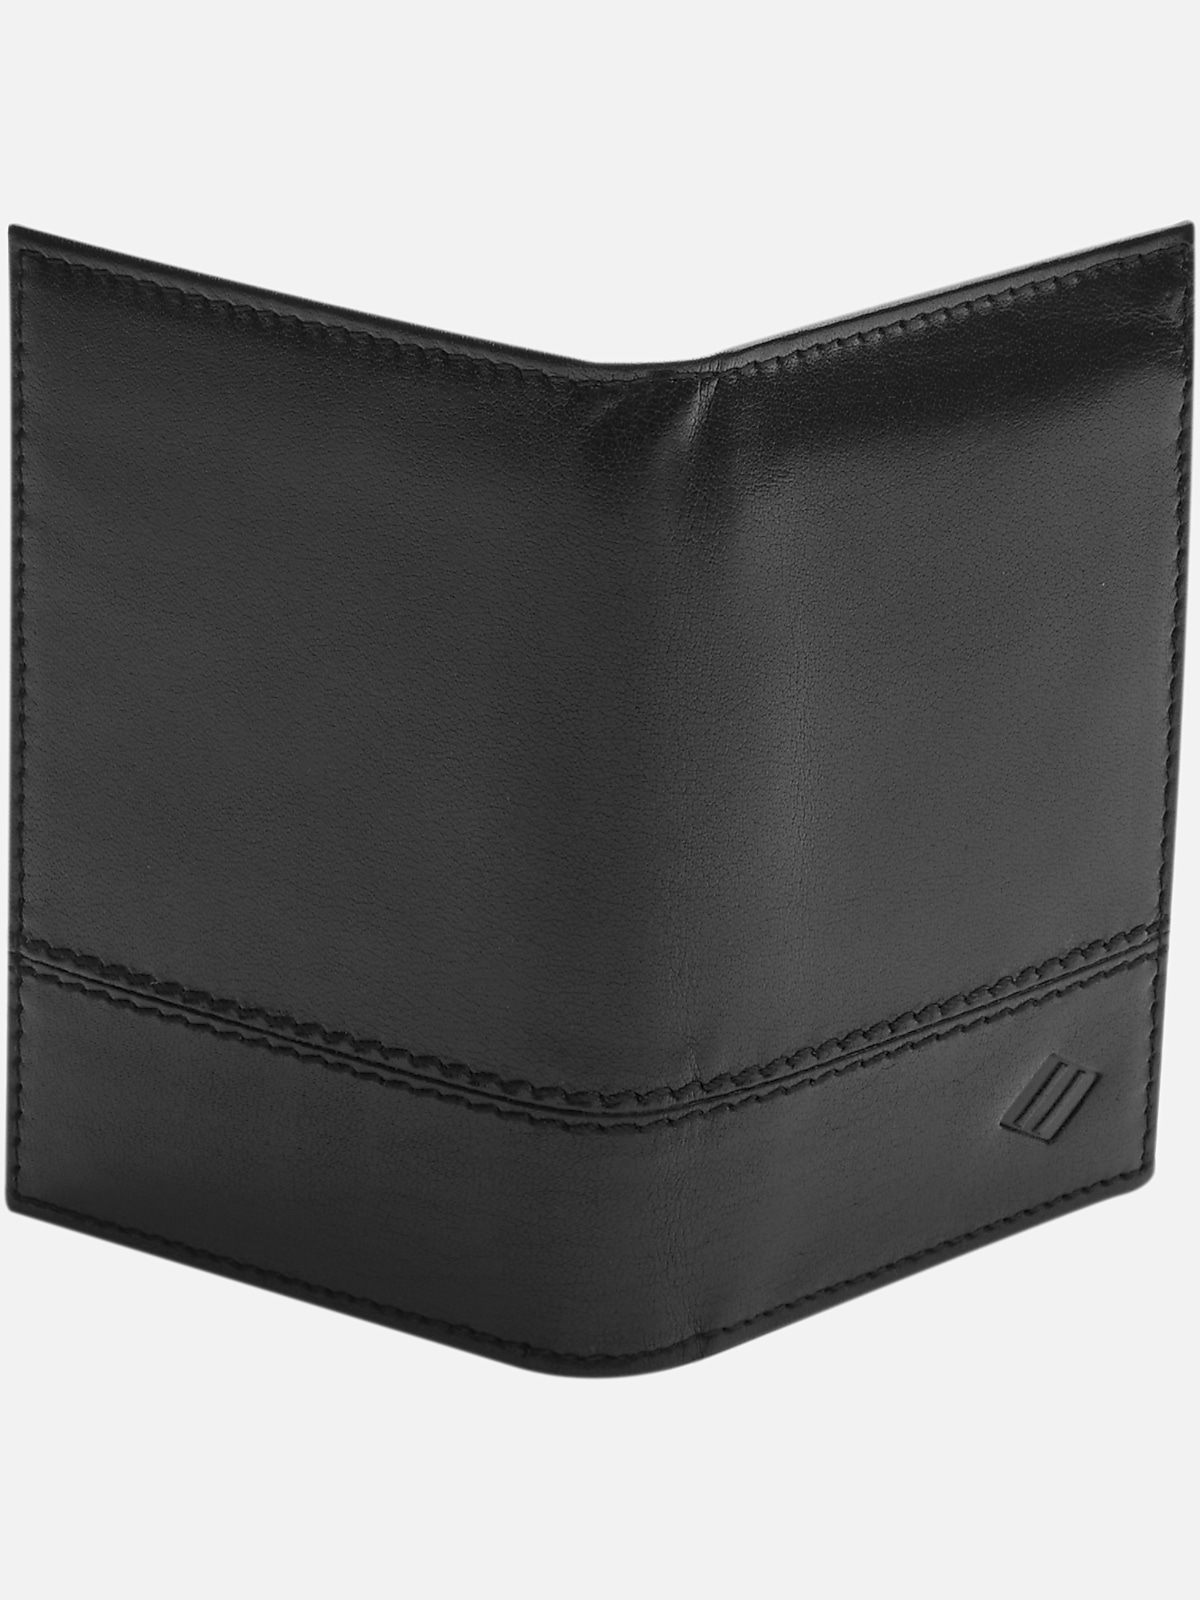 Joseph Abboud L-Fold Leather Wallet | Wallets| Men's Wearhouse